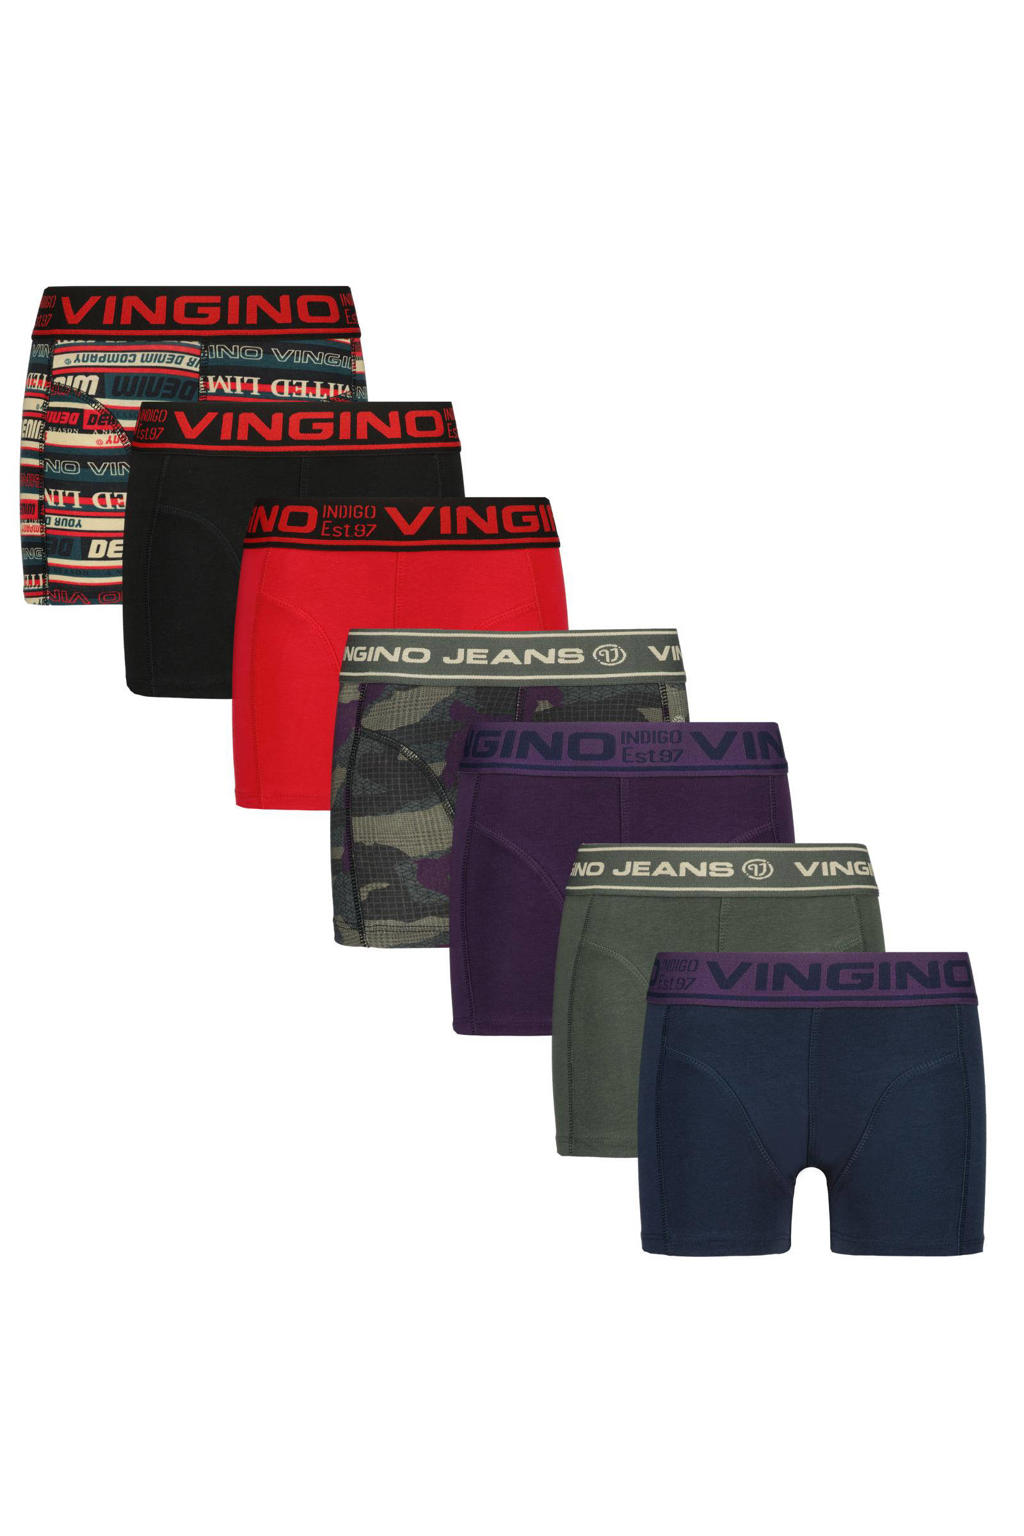 Vingino   boxershort - set van 7 groen/rood/blauw